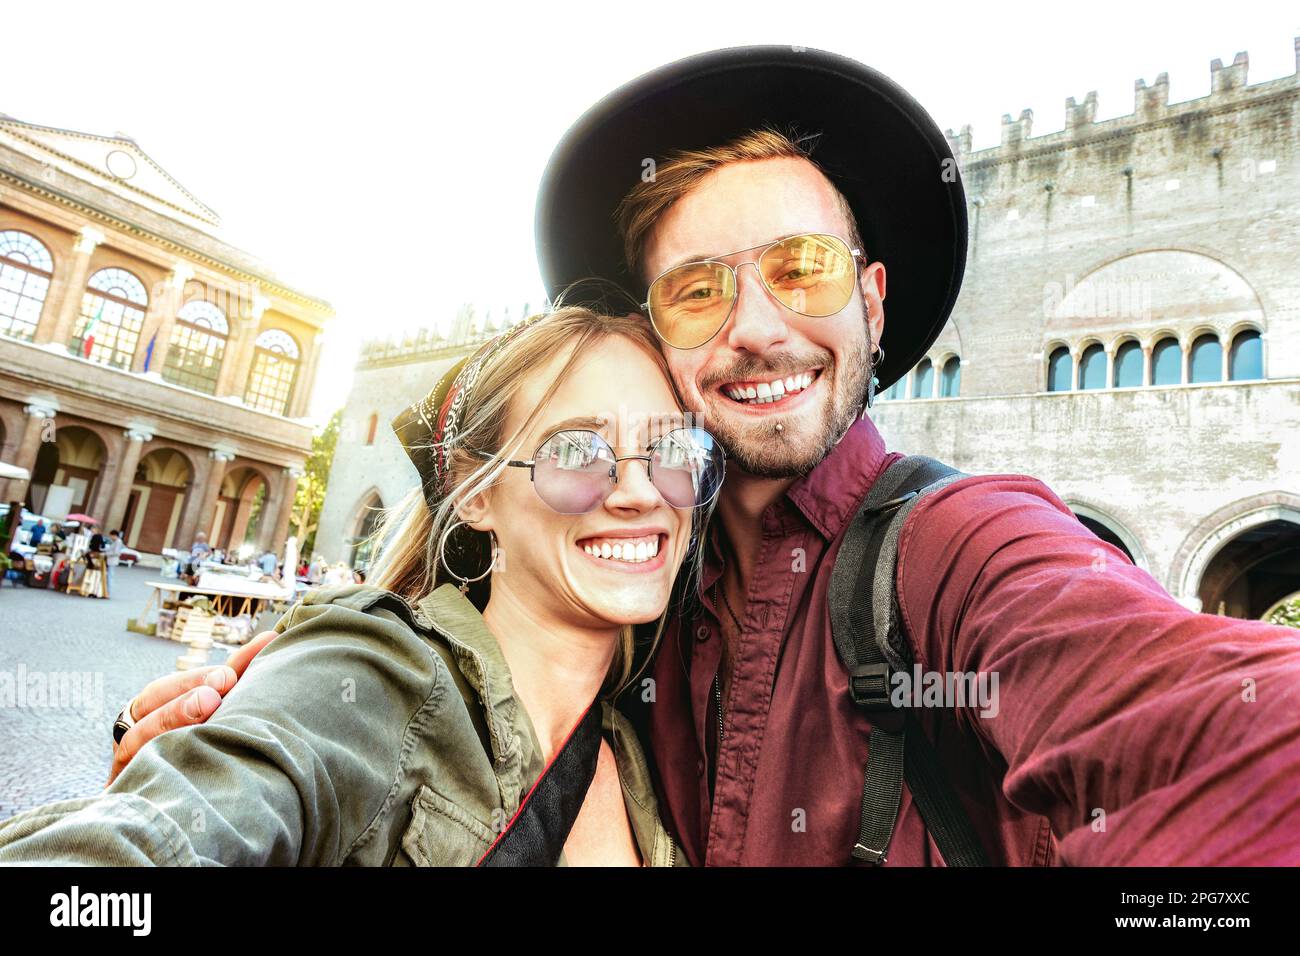 Giovane uomo e donna innamorati divertirsi a fare selfie nel tour della città vecchia - Wanderlust stile di vita concetto di viaggio con bella coppia turistica sulle attrazioni della città Foto Stock